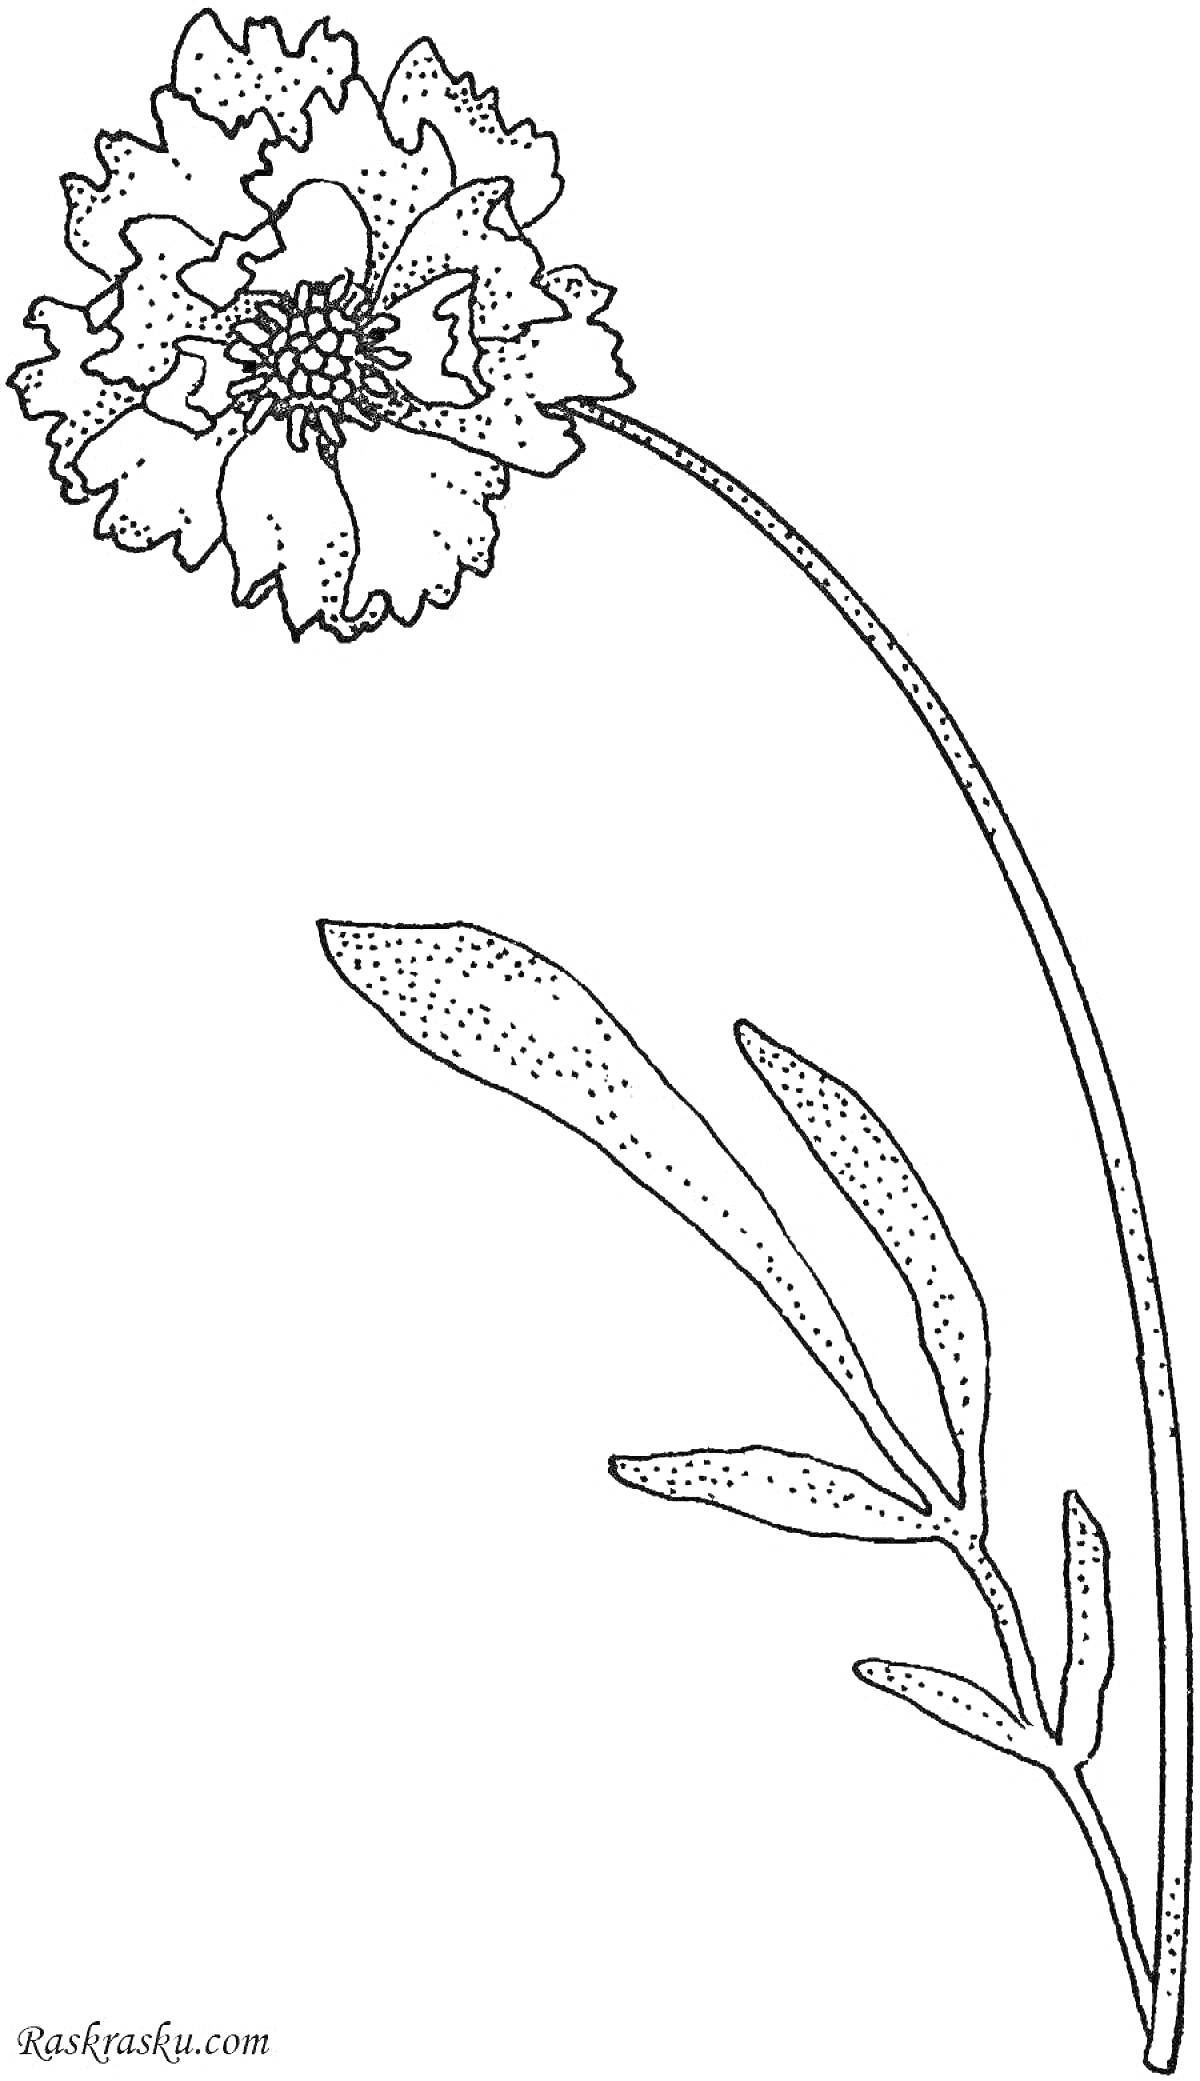 Раскраска Раскраска с изображением гвоздики, включающей один цветок на длинном изогнутом стебле с одним крупным листом и двумя меньшими листьями